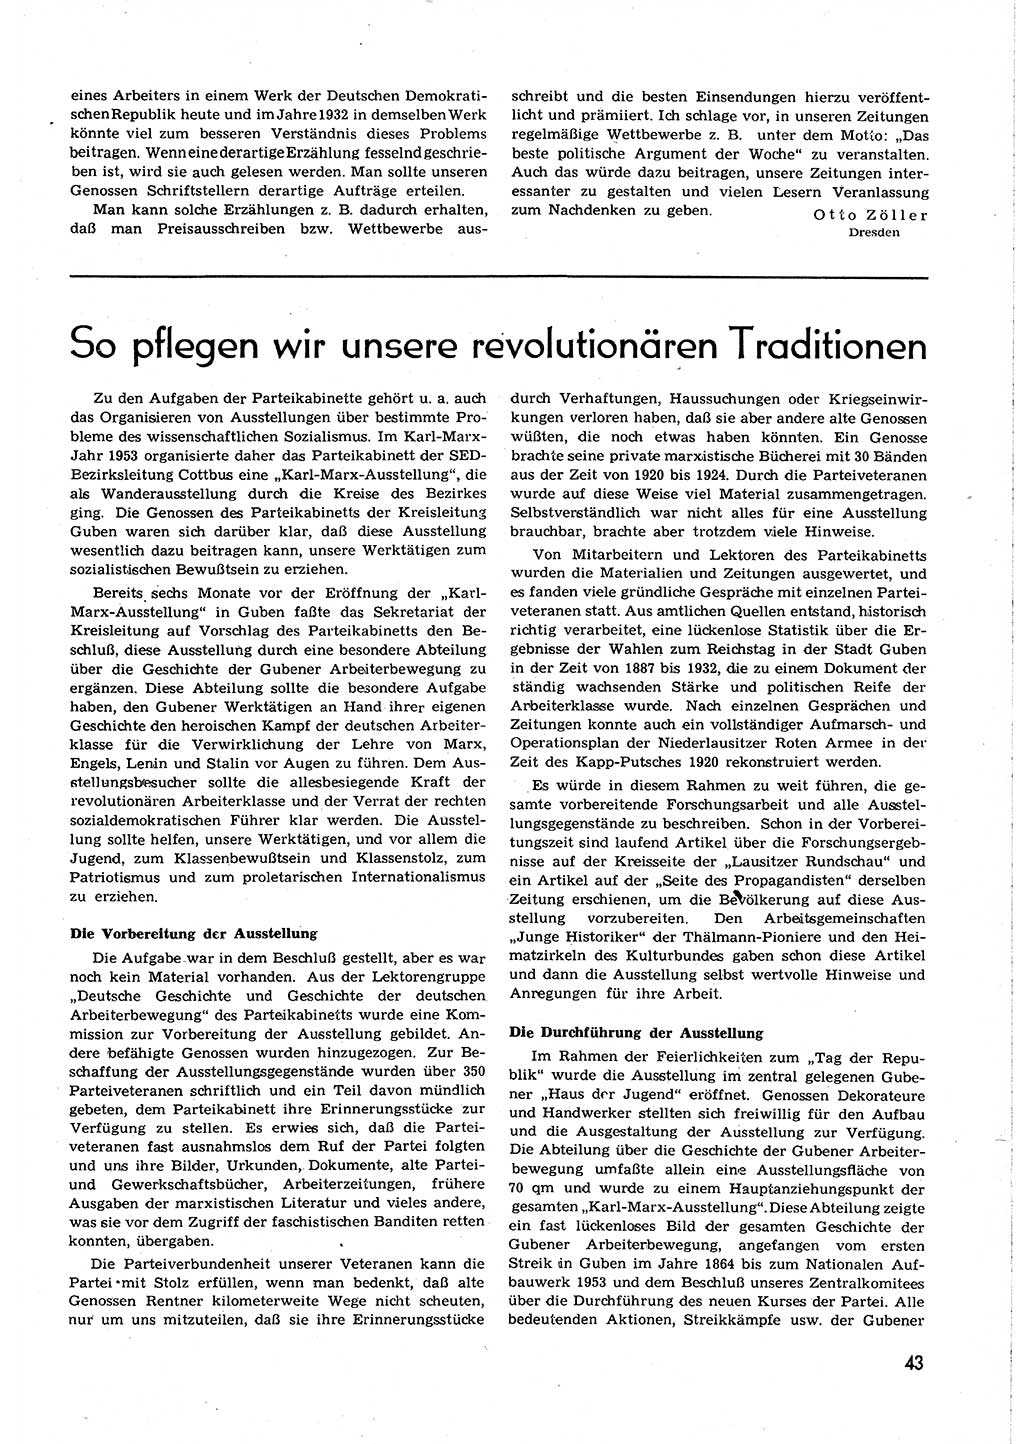 Neuer Weg (NW), Organ des Zentralkomitees (ZK) [Sozialistische Einheitspartei Deutschlands (SED)] für alle Parteiarbeiter, 8. Jahrgang [Deutsche Demokratische Republik (DDR)] 1953, Heft 23/43 (NW ZK SED DDR 1953, H. 23/43)